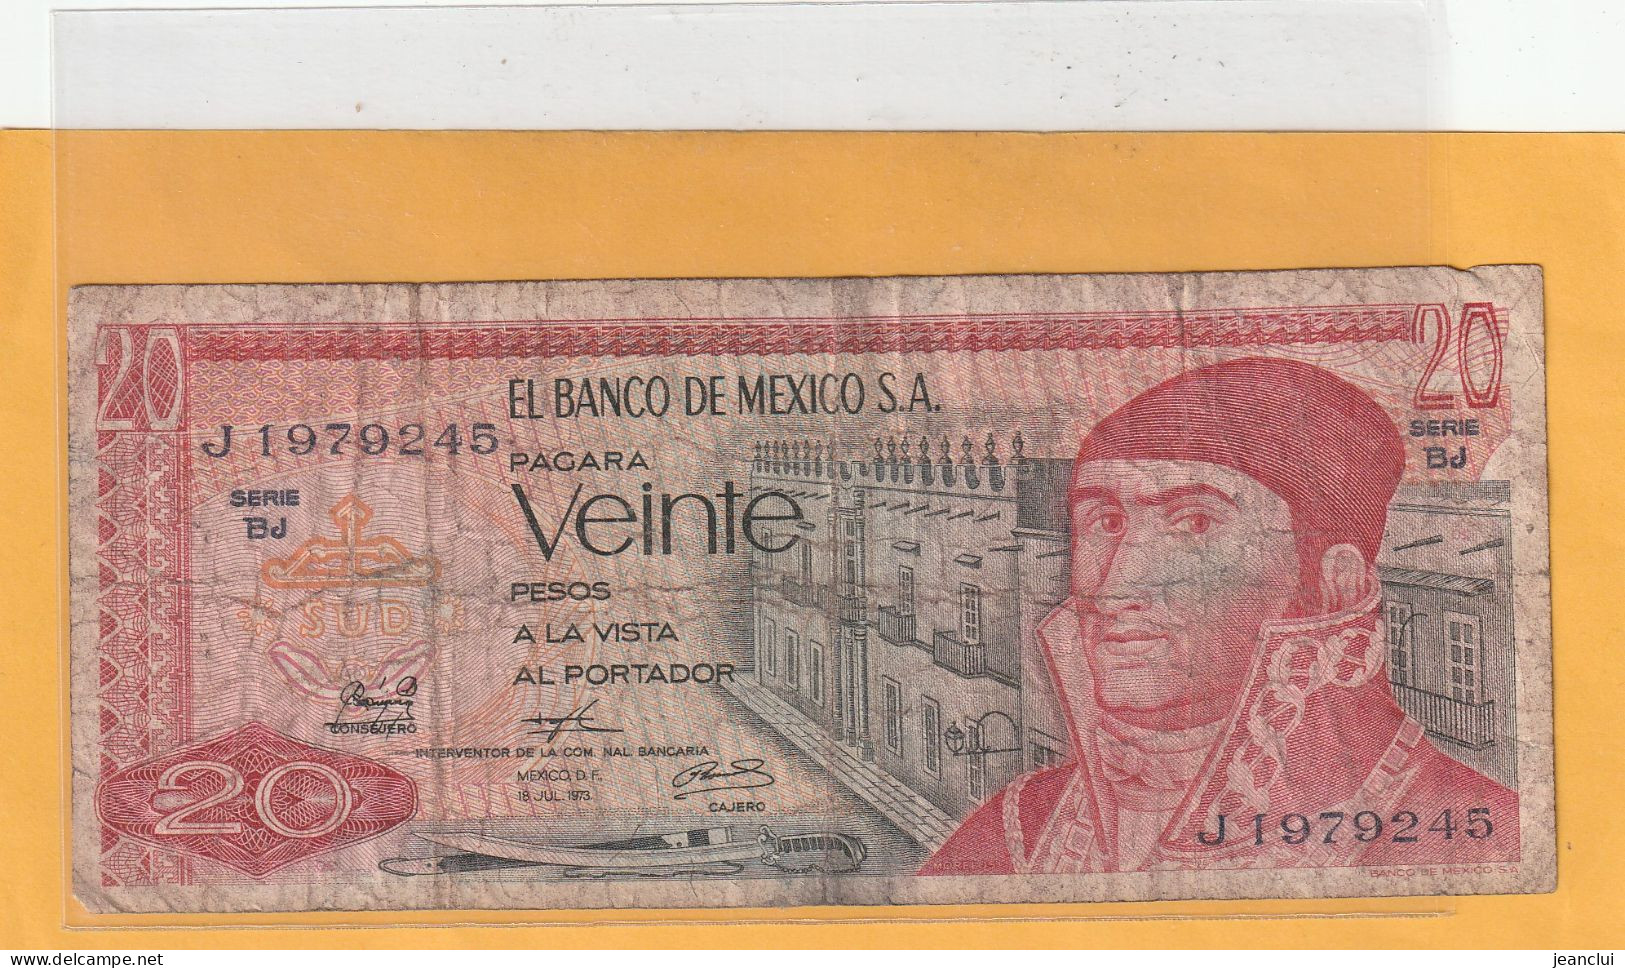 EL BANCO DE MEXICO S.A.   .  20 PESOS  .  18-7-1973  .  N°  J 1979245 .  2 SCANNES  .  BILLET TRES USITE - Mexique